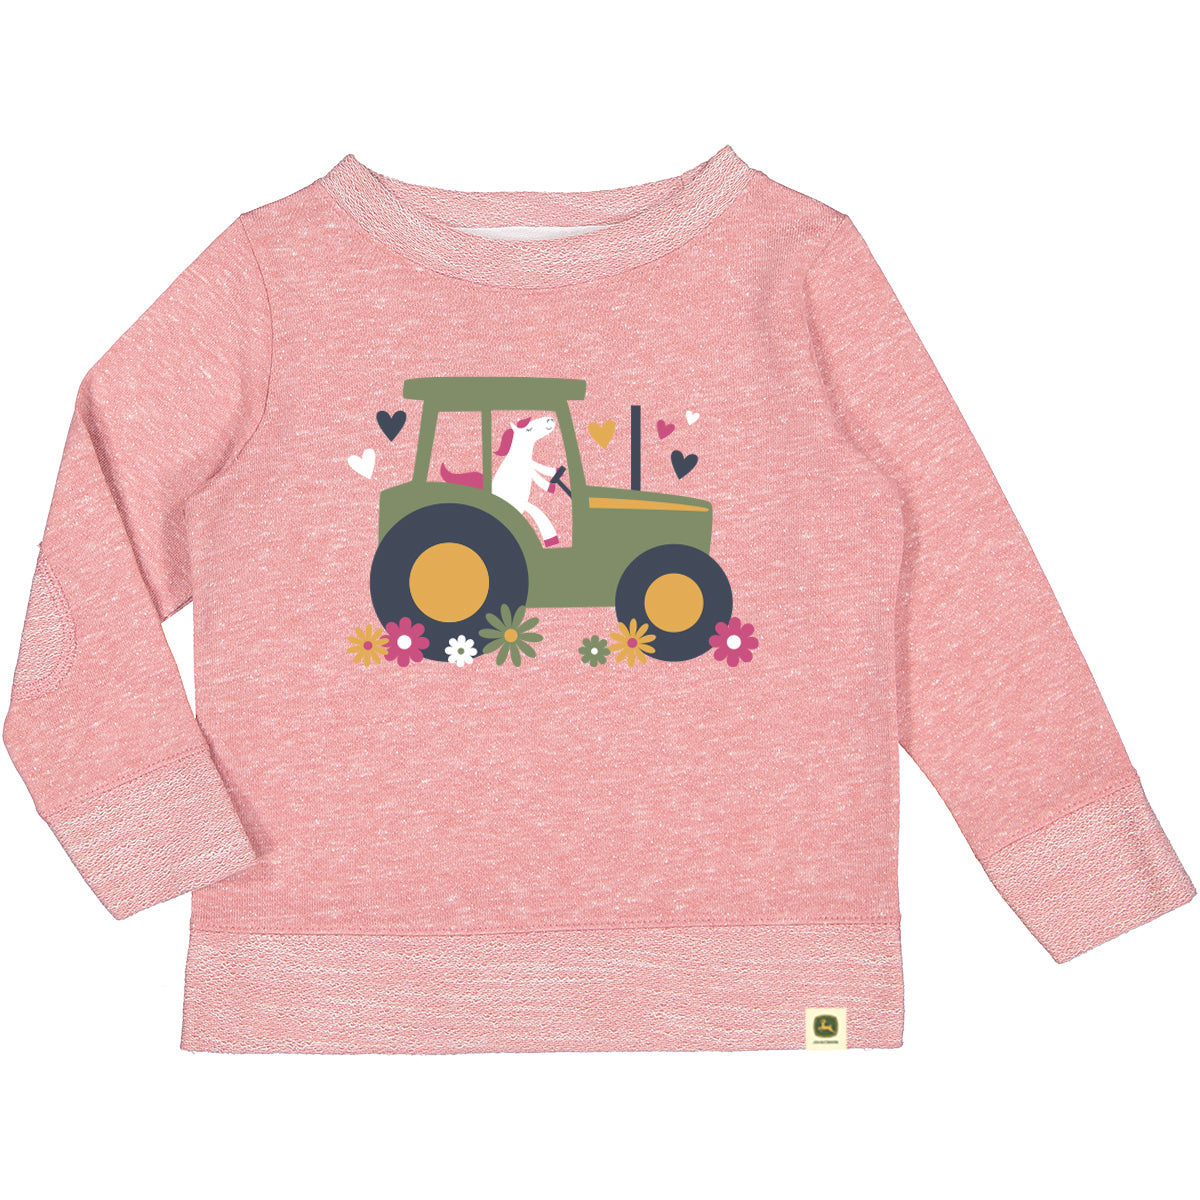 John Deere Toddler Horse Driving Tractor Sweatshirt - RDO Equipjment